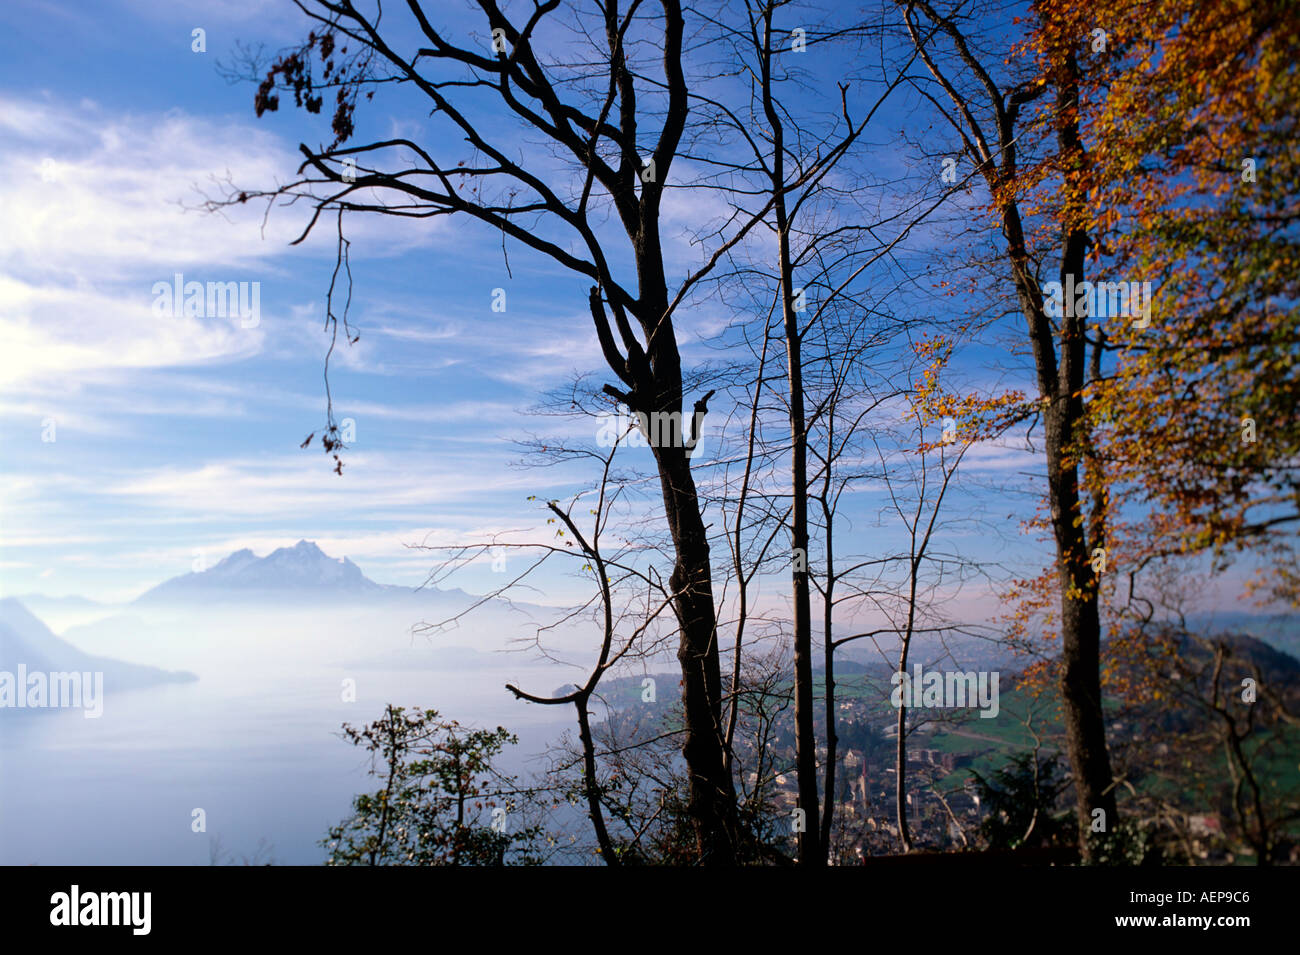 Villaggio di weggis e Monte Pilatus Lago di lucerna swiss alpes il cantone di Lucerna svizzera Foto Stock